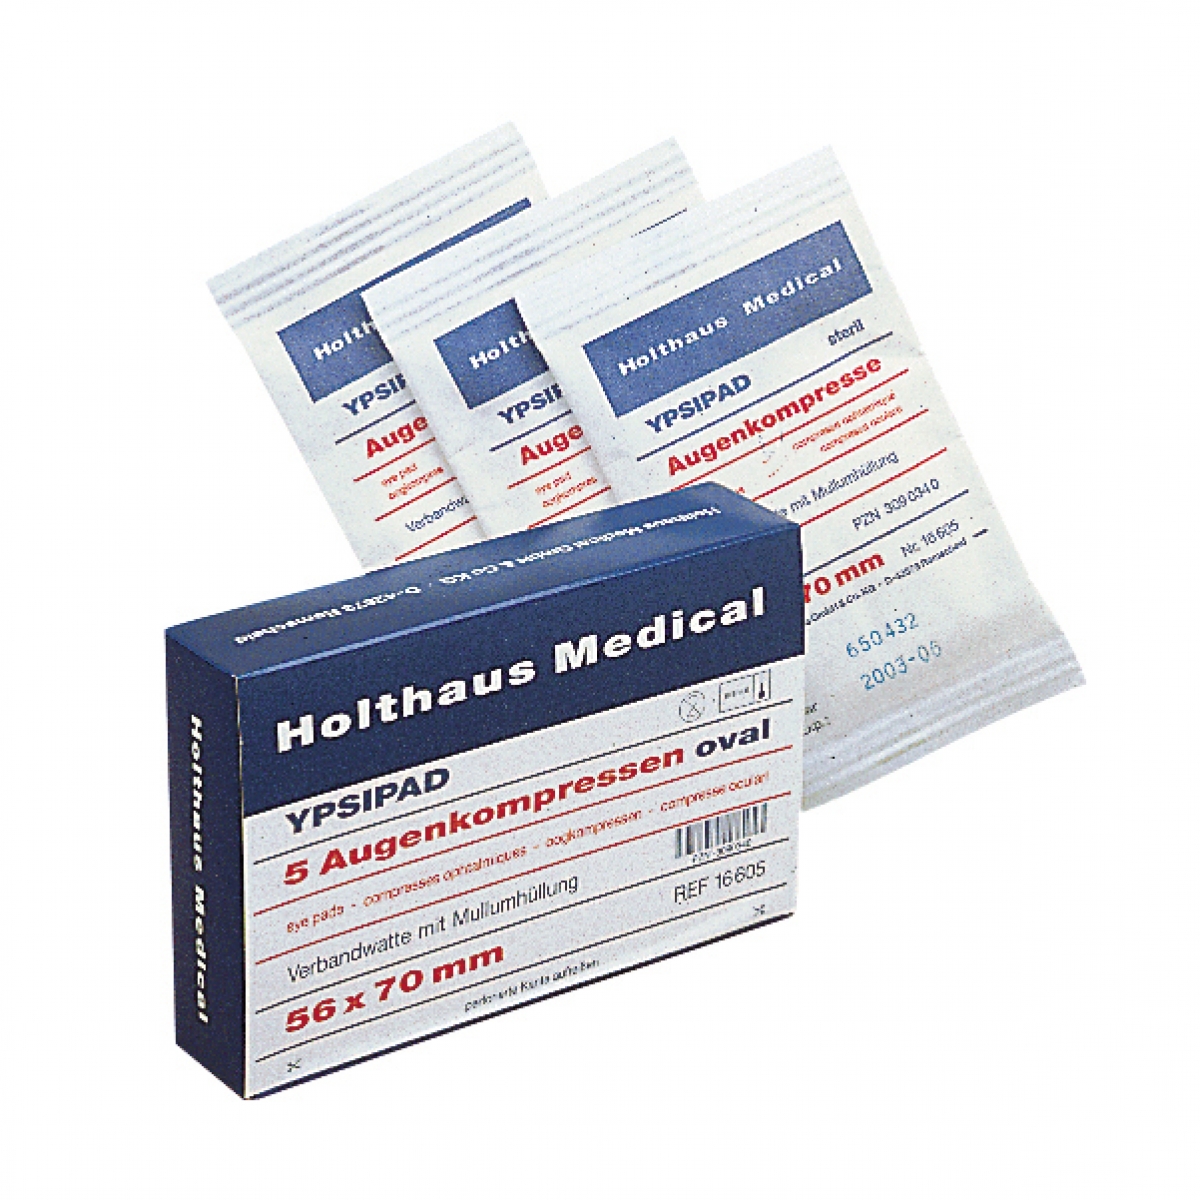 Holthaus Medical, Erste-Hilfe, YPSIPAD Augenkompresse, 56 x 70 mm